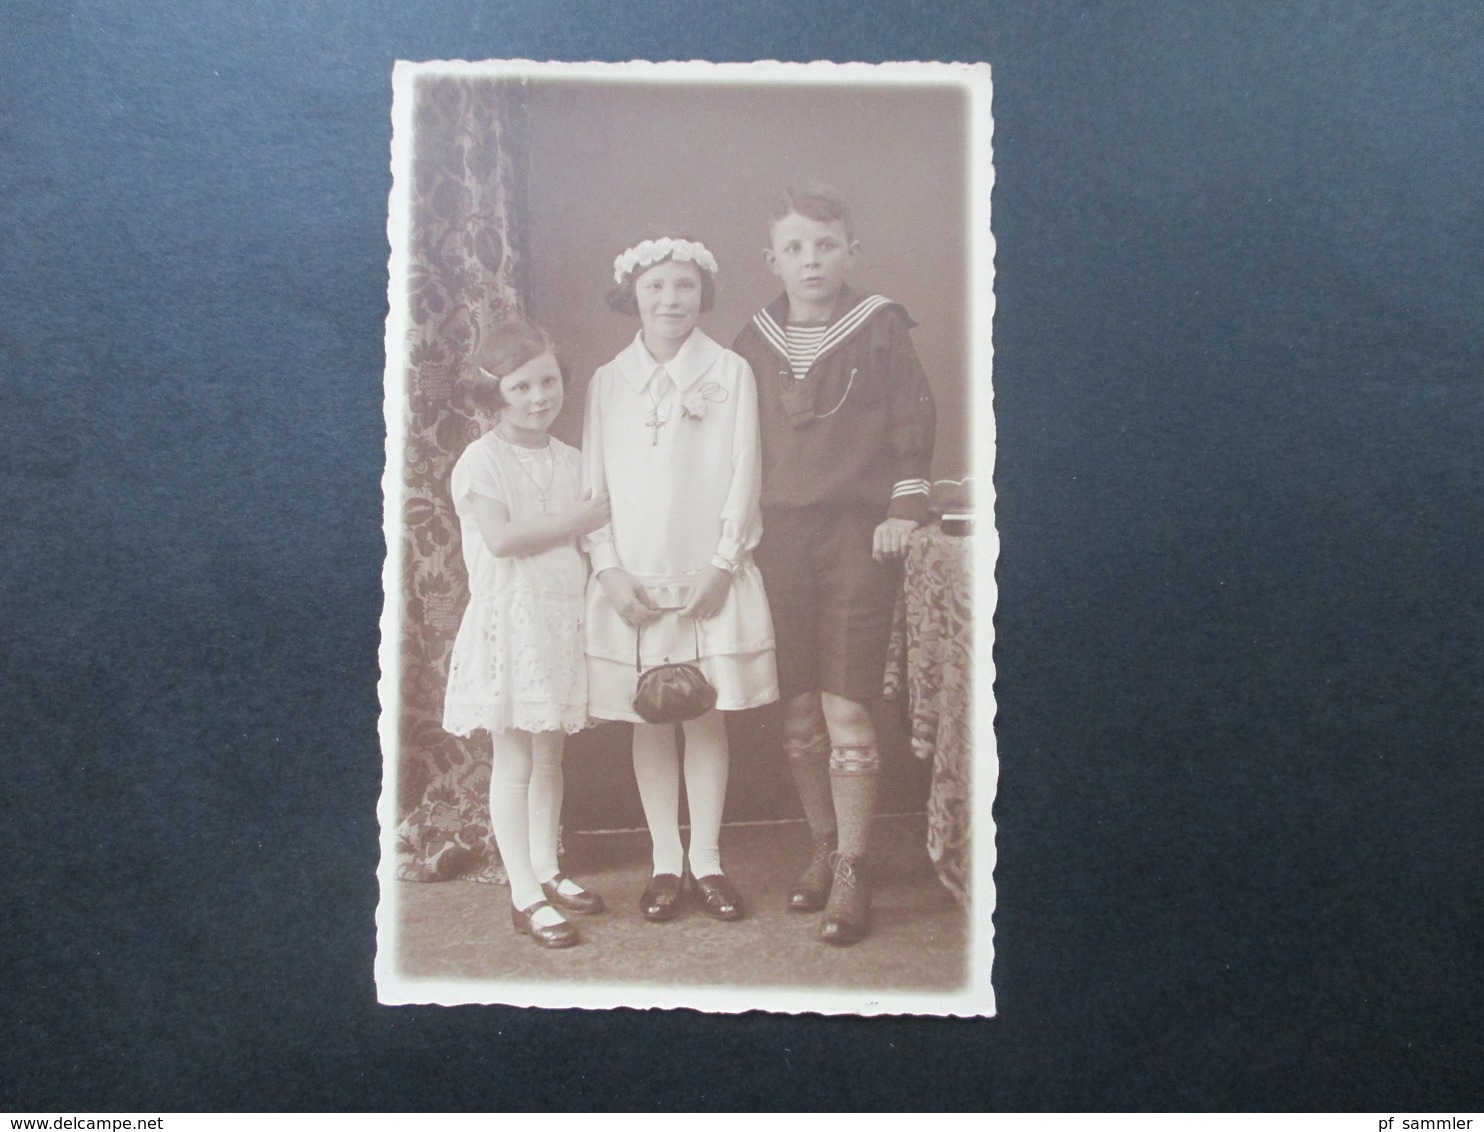 AK Echtfoto 1927 Kinder In Sonntagskleidung. Matrosenjacke ?! Mädchen Im Kleid. St. Anna 1927 Zum Namensfeste.... - Children And Family Groups